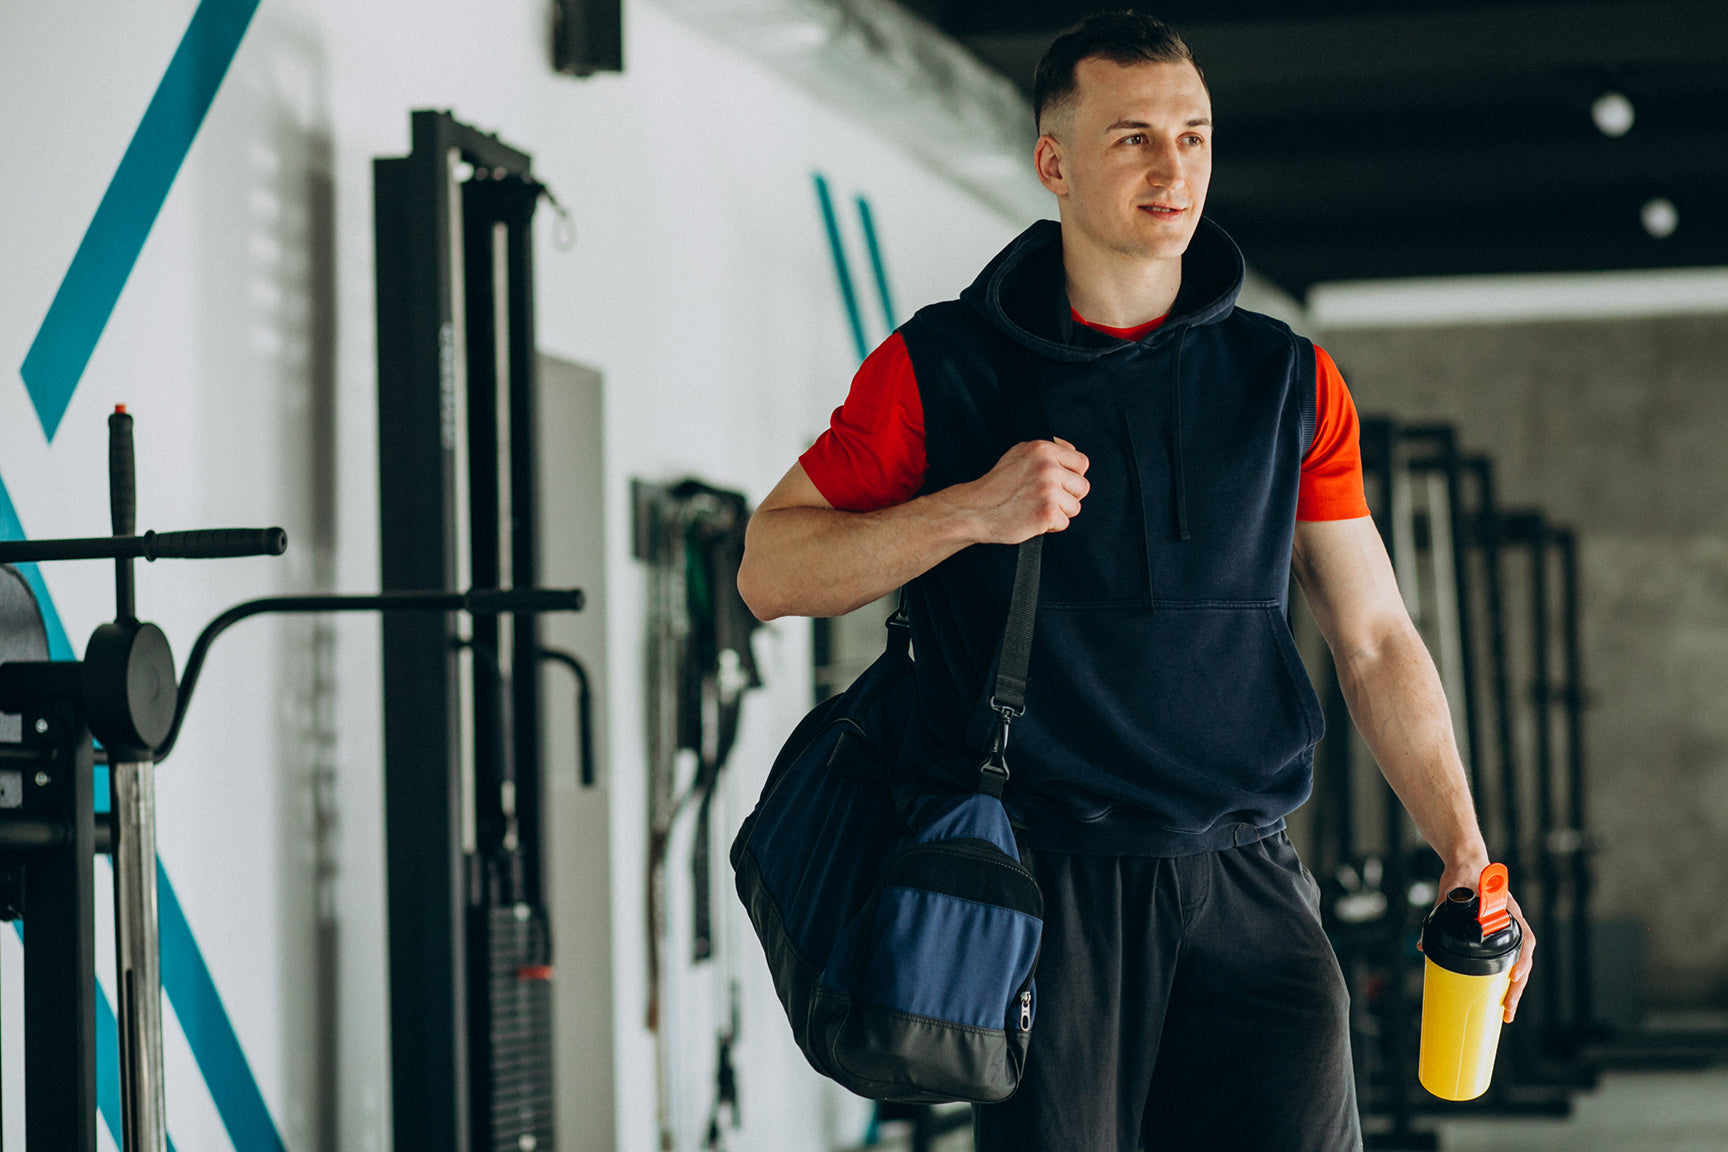 Guide to Gym Kit Bag? – Xn8 Sports